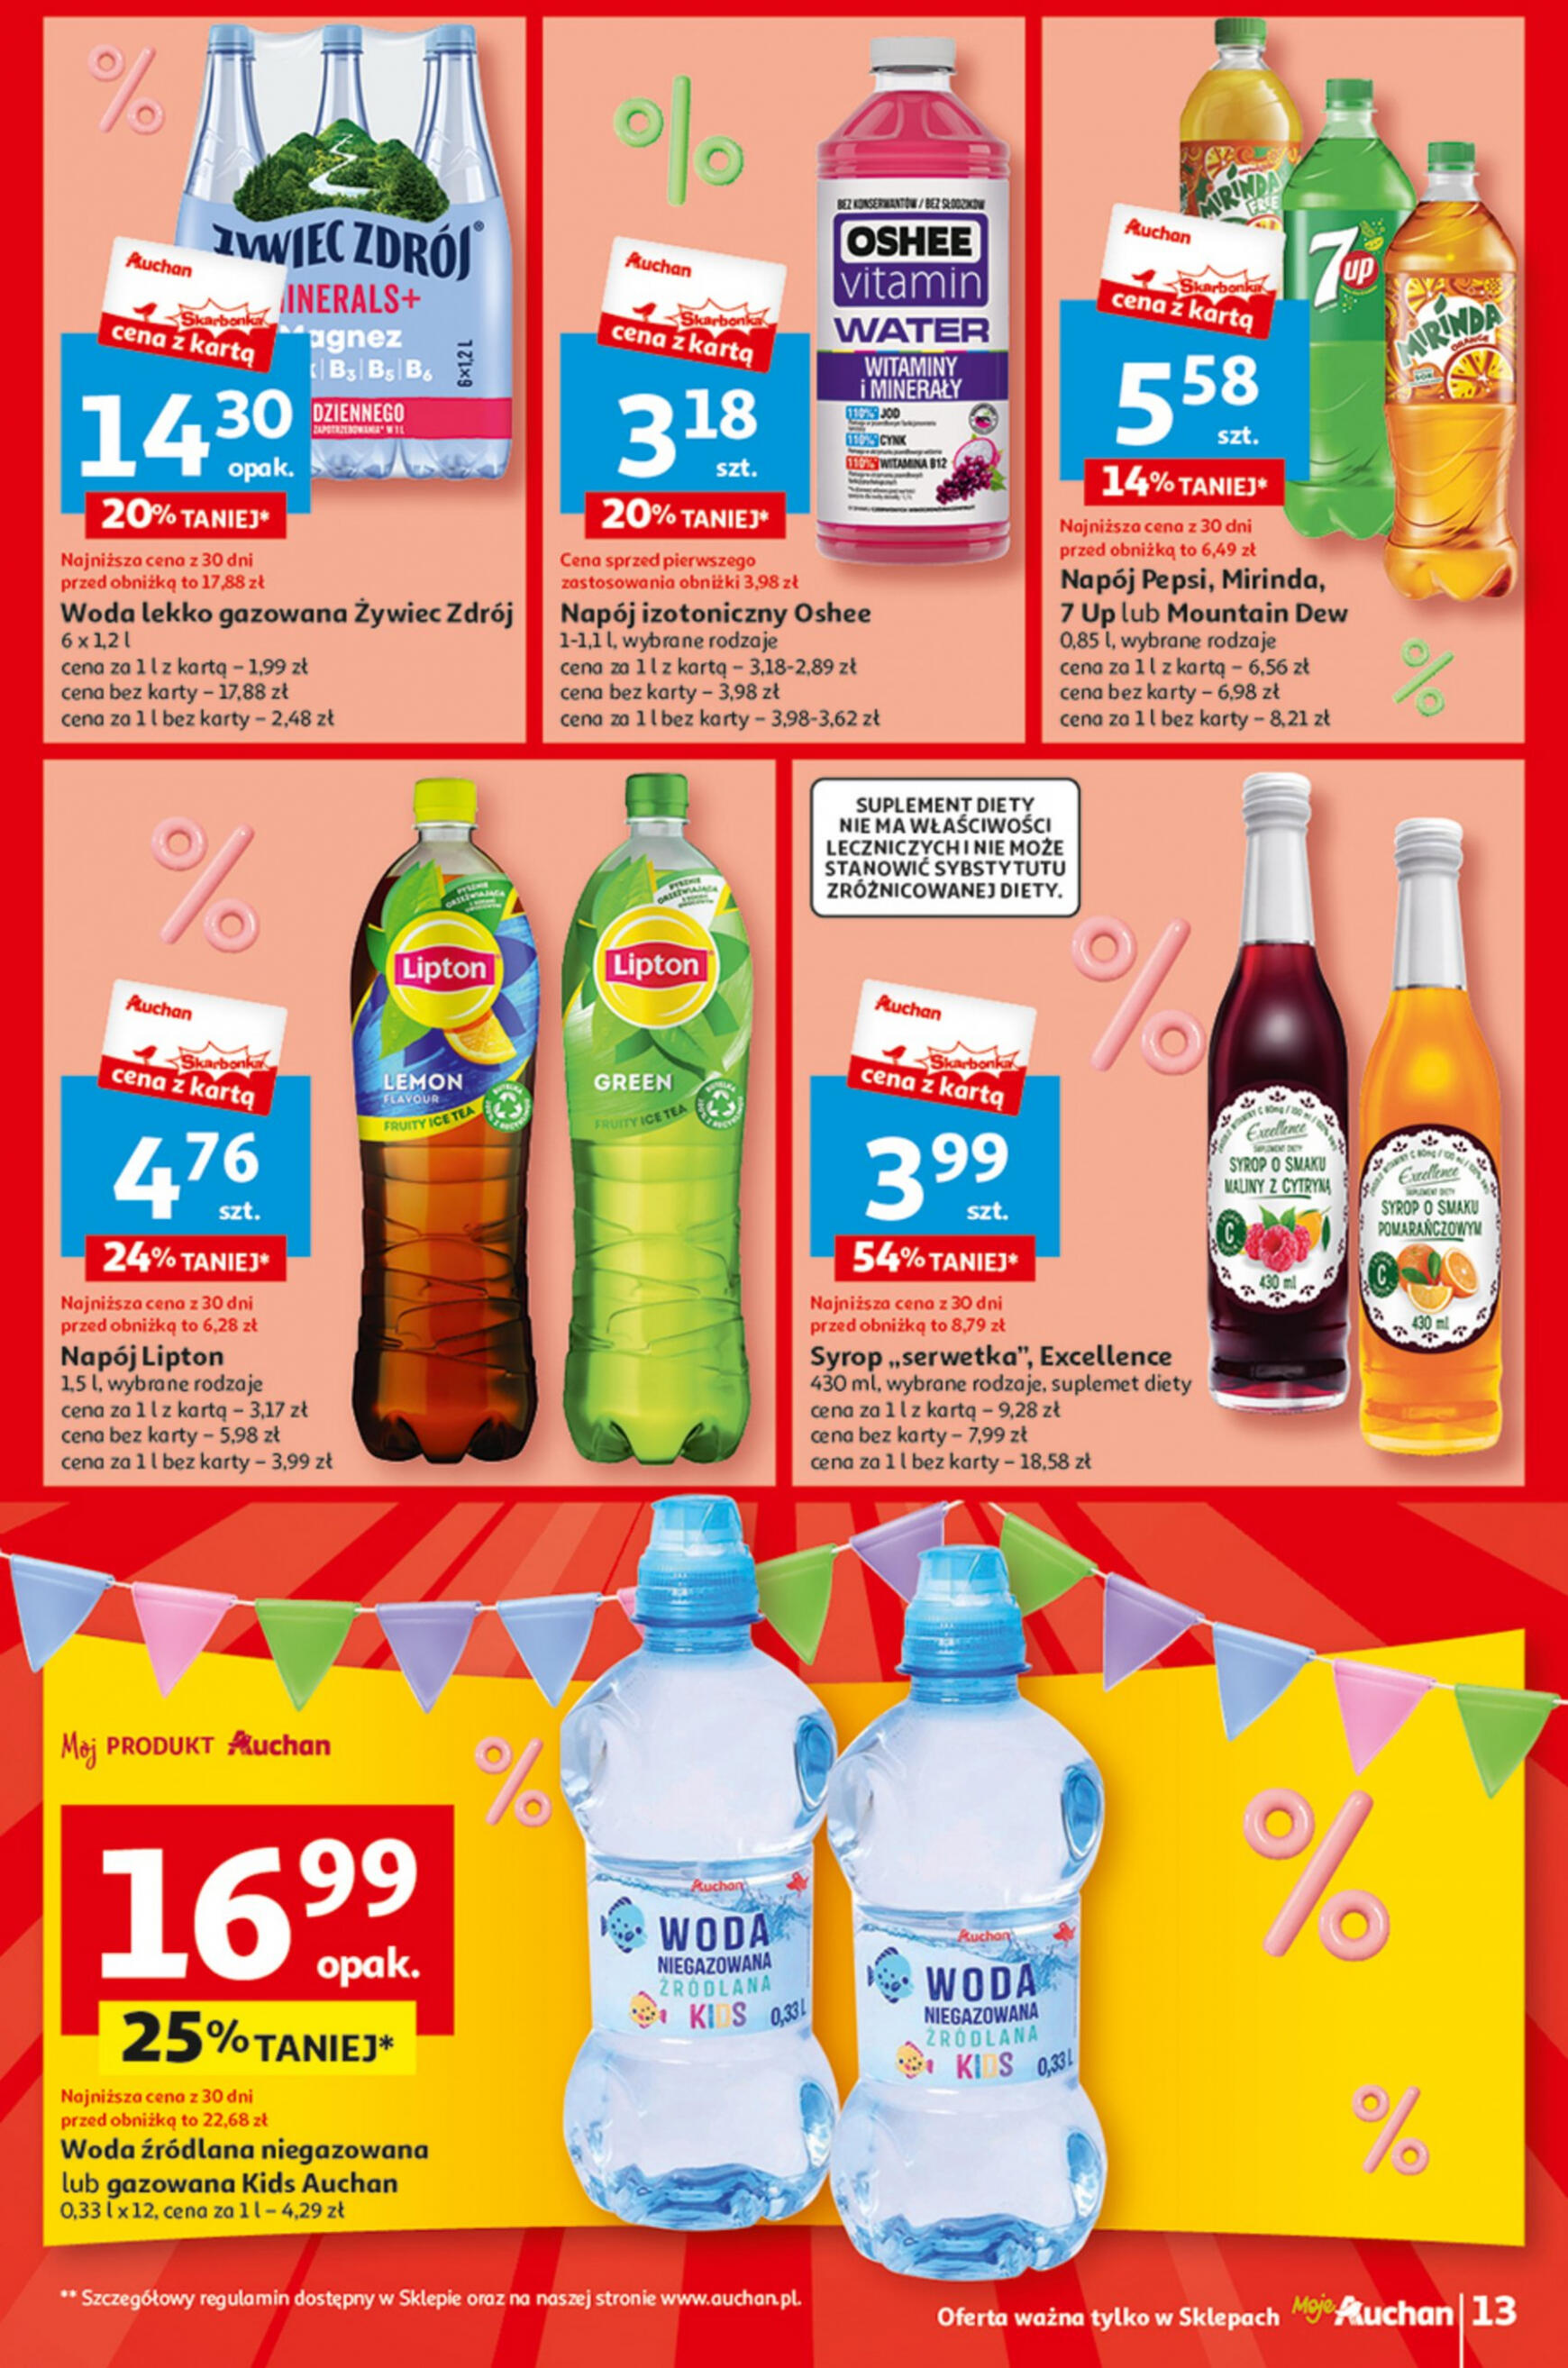 auchan - Moje Auchan - Gazetka Jeszcze taniej na urodziny gazetka aktualna ważna od 09.05. - 15.05. - page: 13